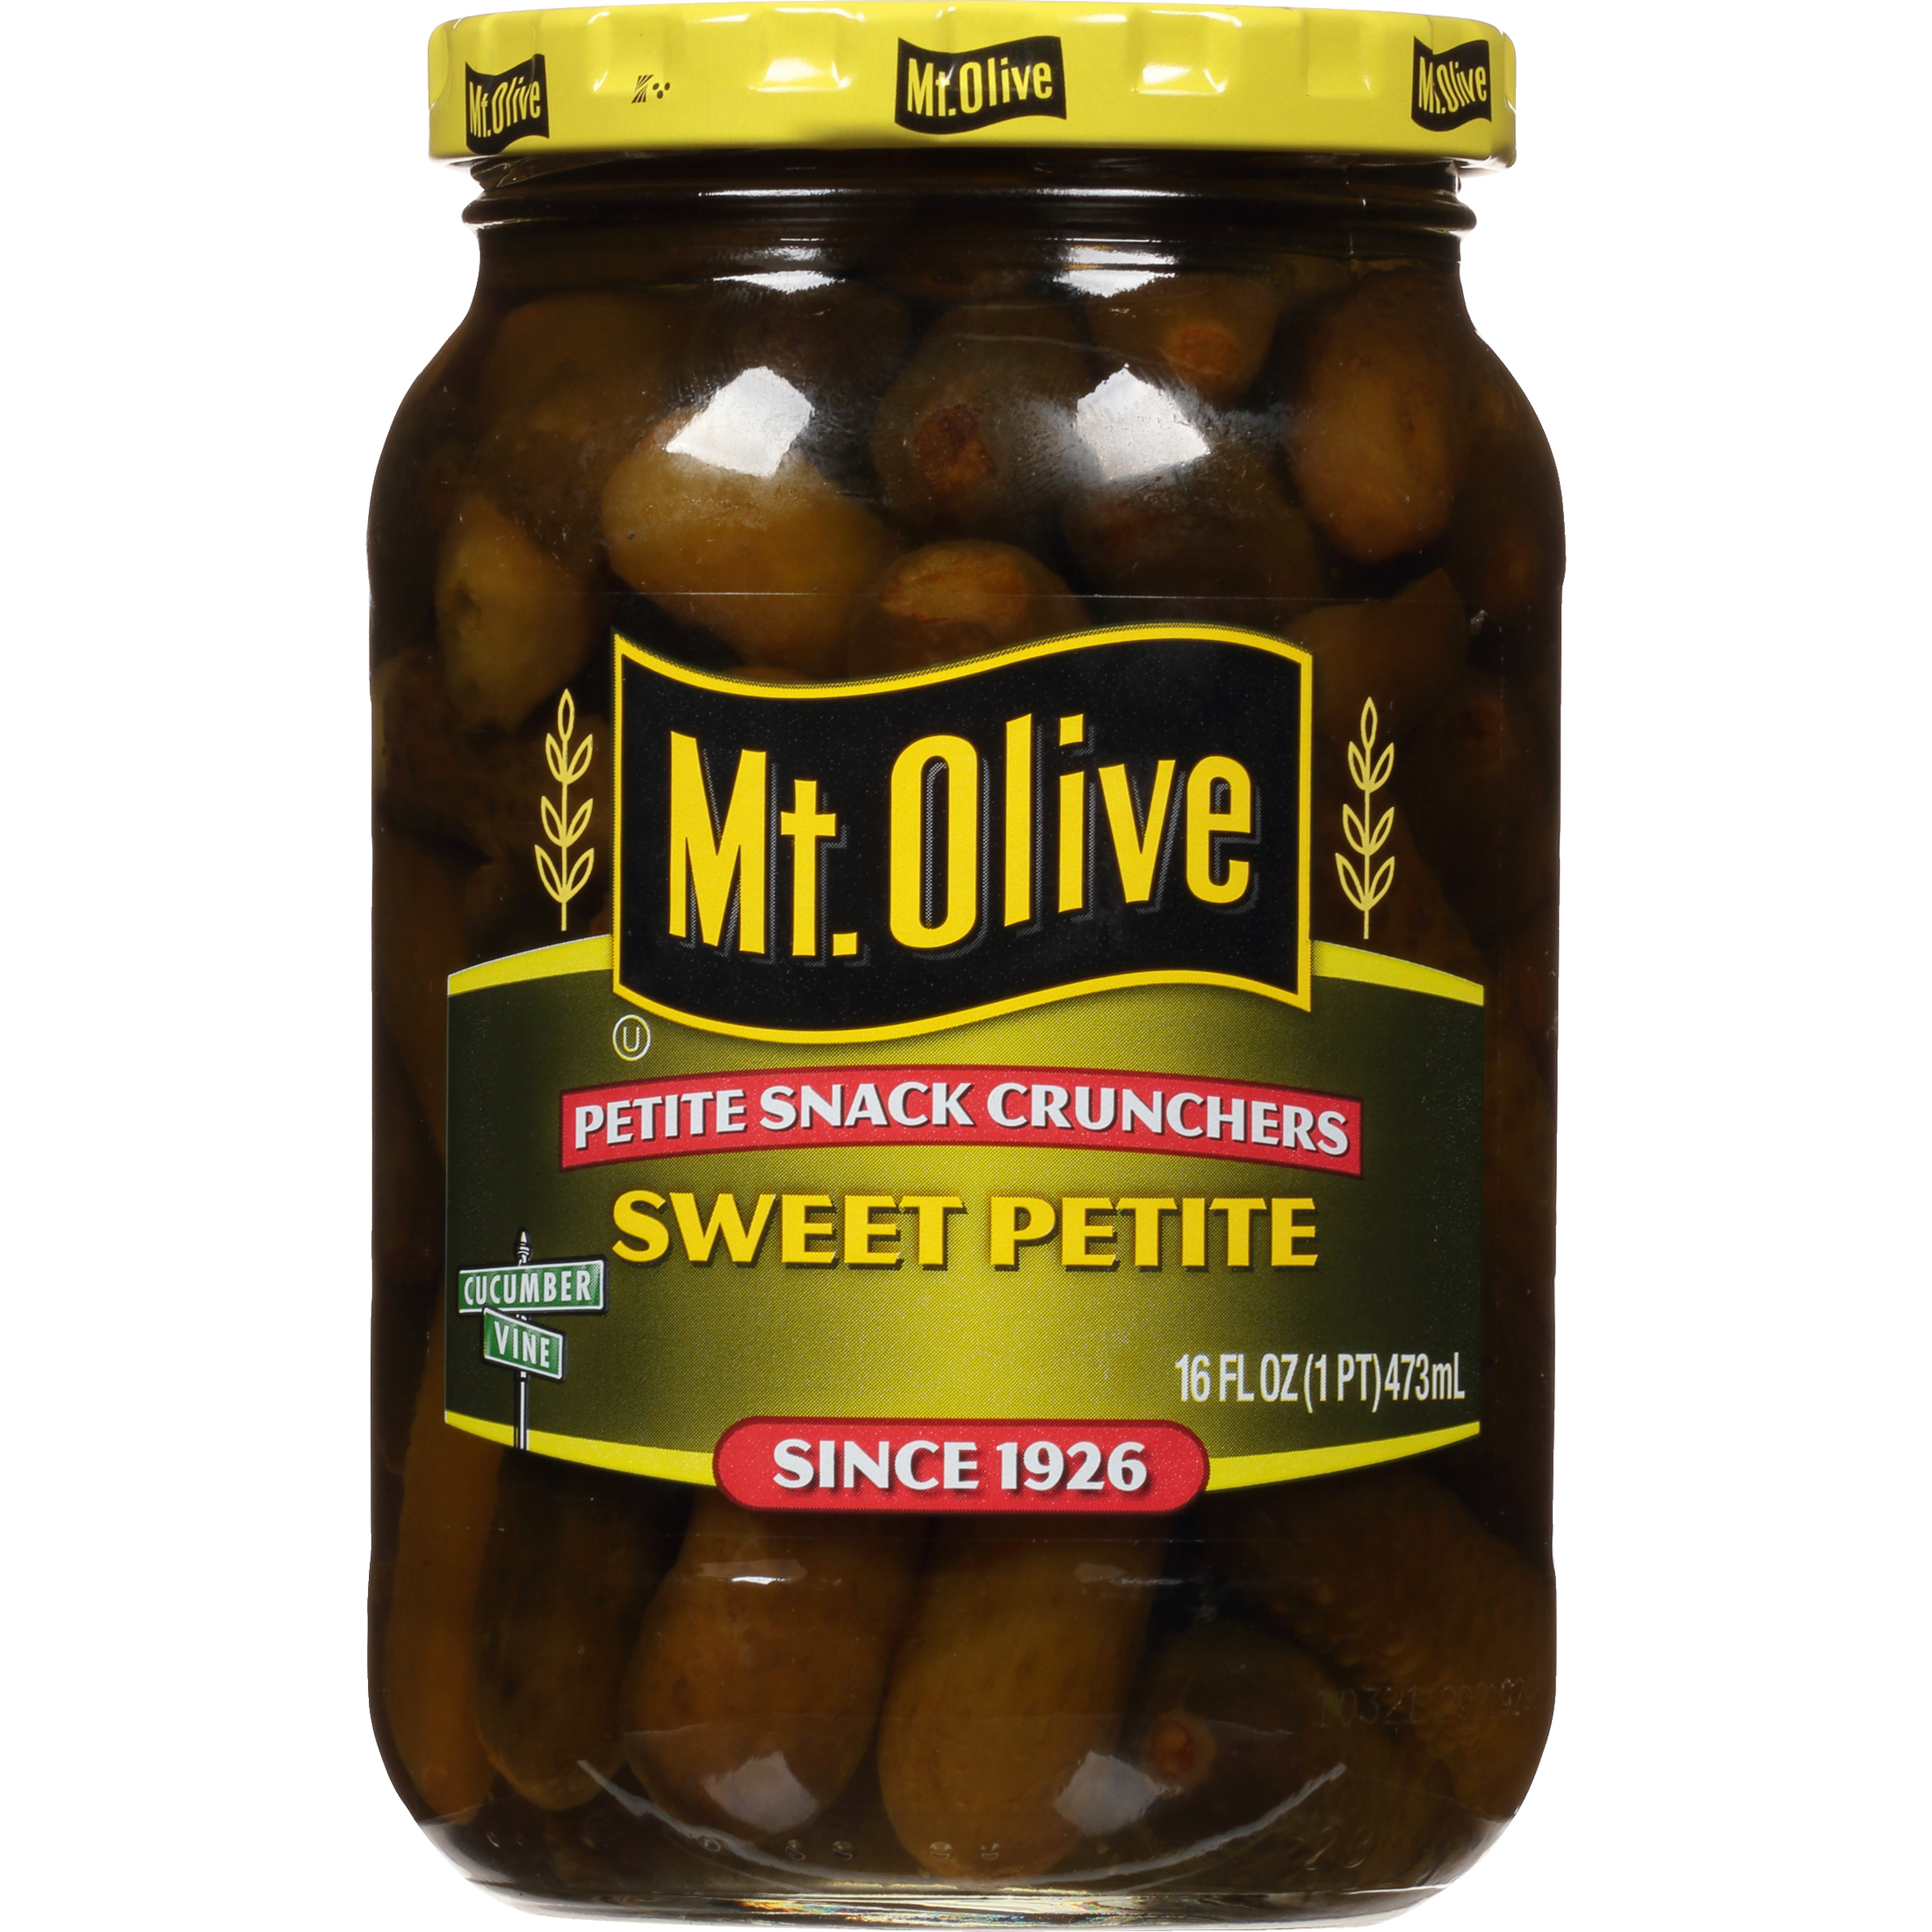 Mt. Olive Sweet Petite Snack Cruncher Pickles, 16 fl oz Jar - image 1 of 5